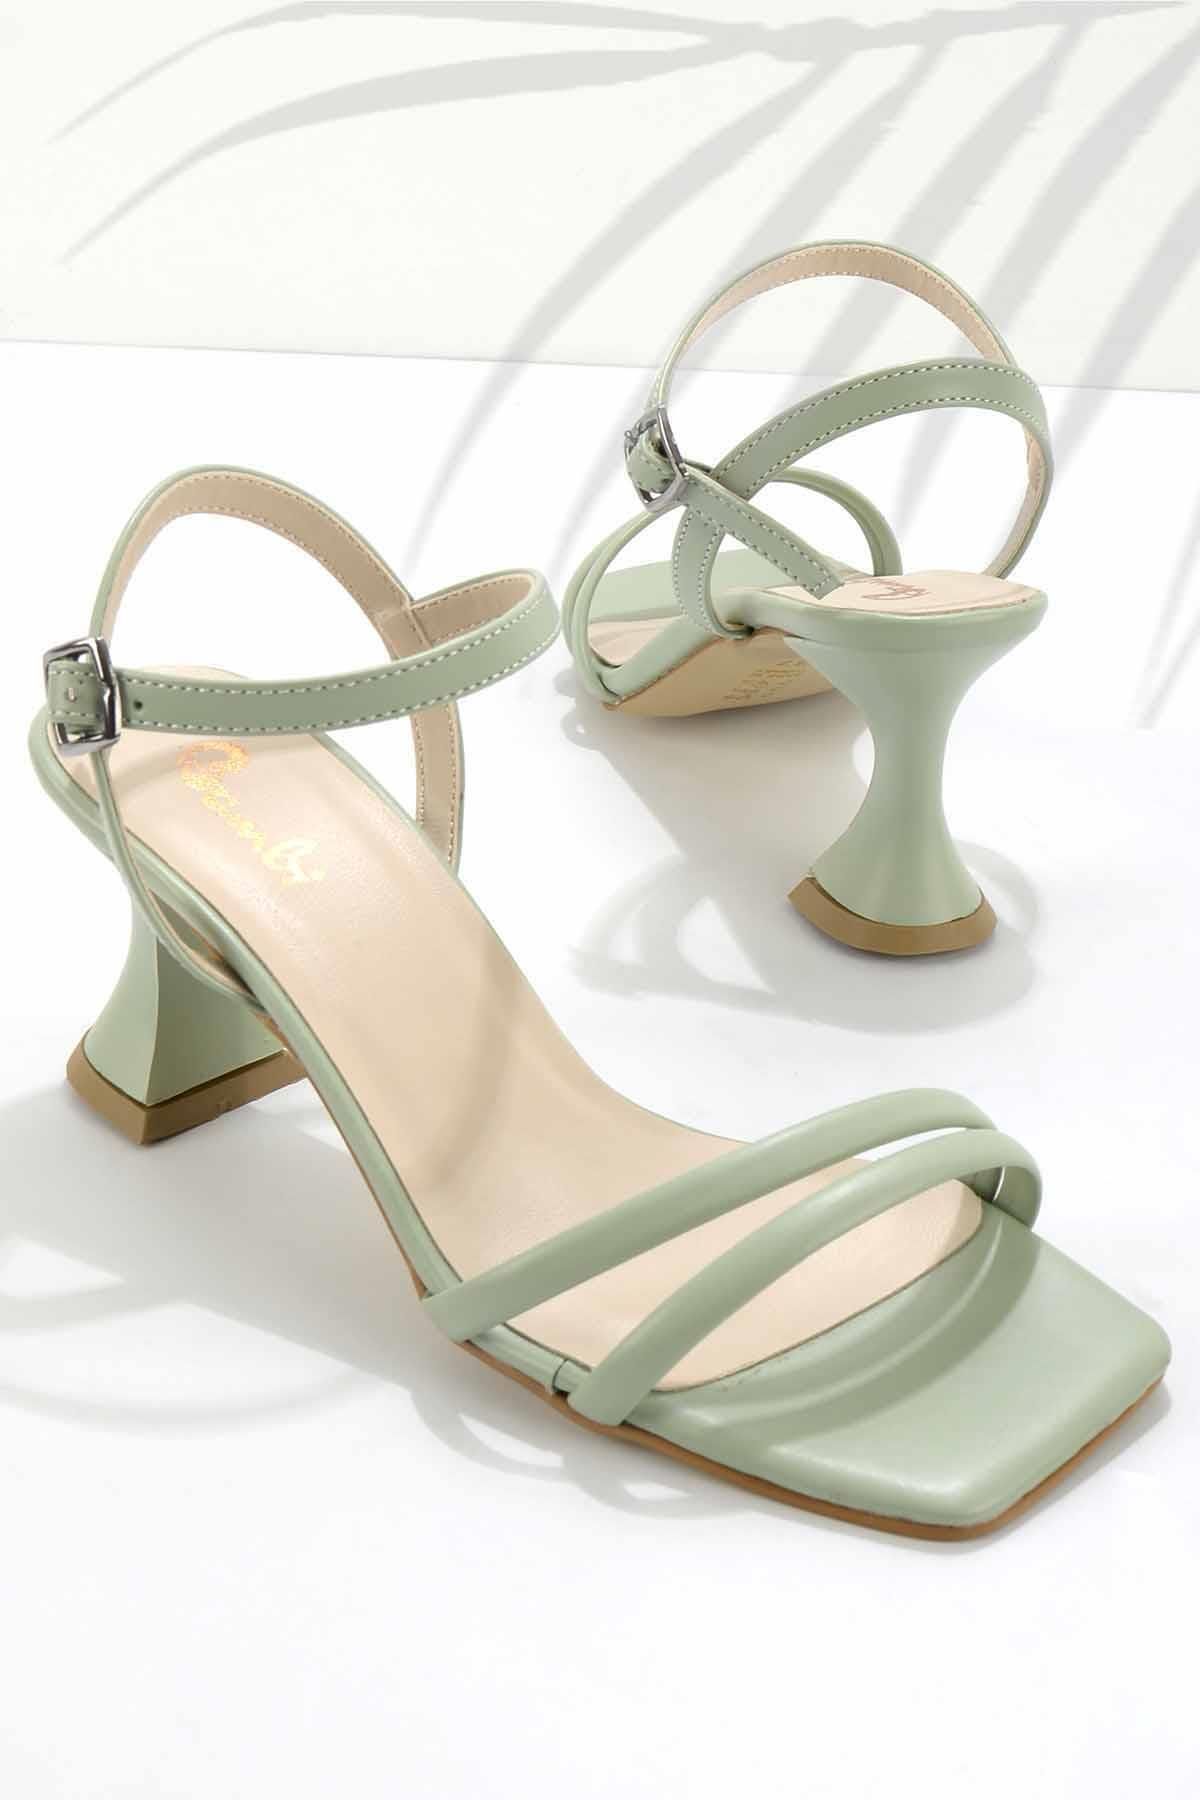 Bambi Su Yeşili Kadın Klasik Topuklu Ayakkabı K05124010309